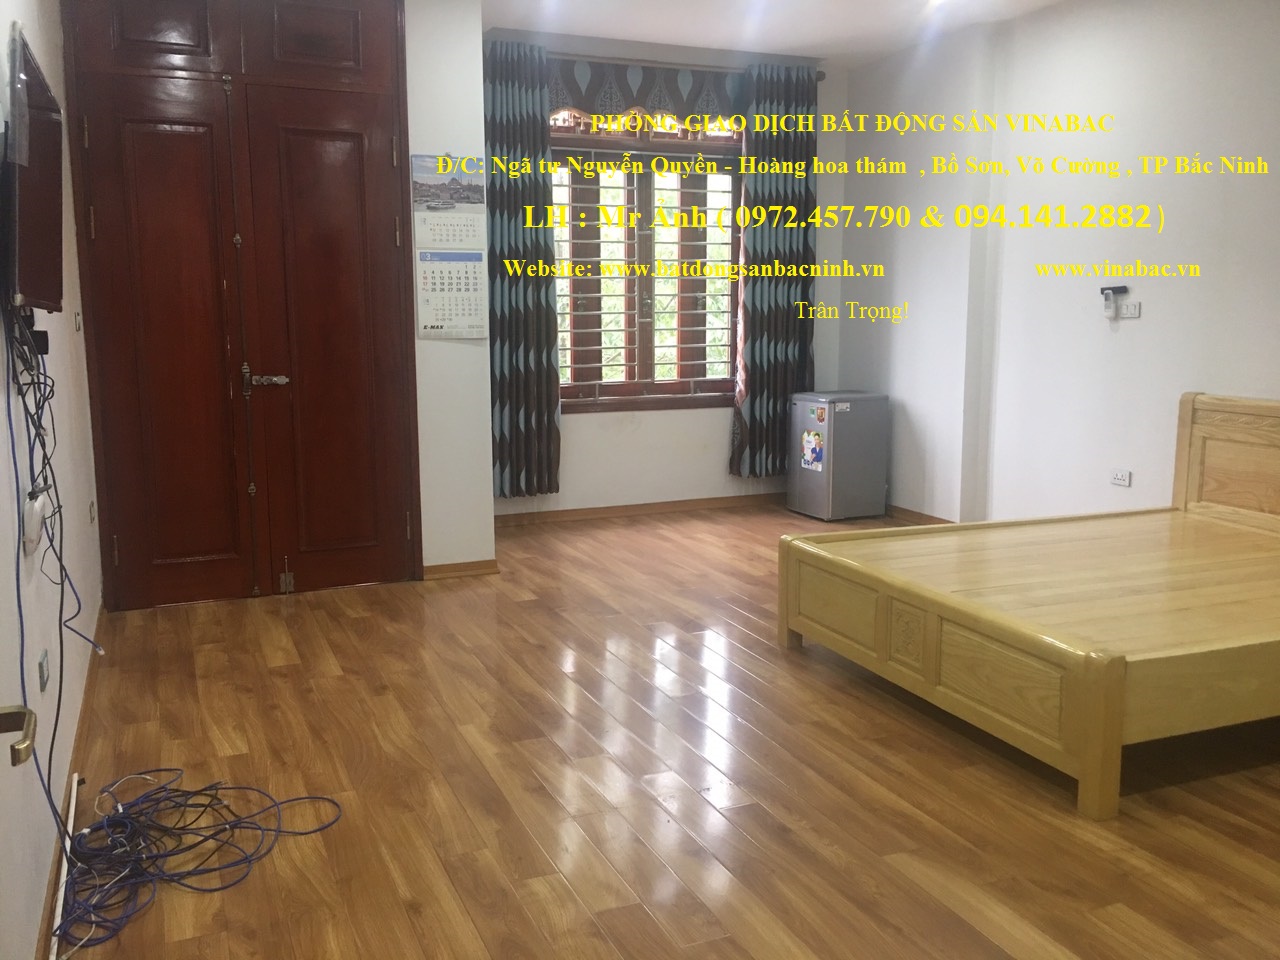 Cho thuê nhà 12 phòng mặt tiền đẹp   - full nội thất – Khu Võ Cường , TP Bắc Ninh 10374440